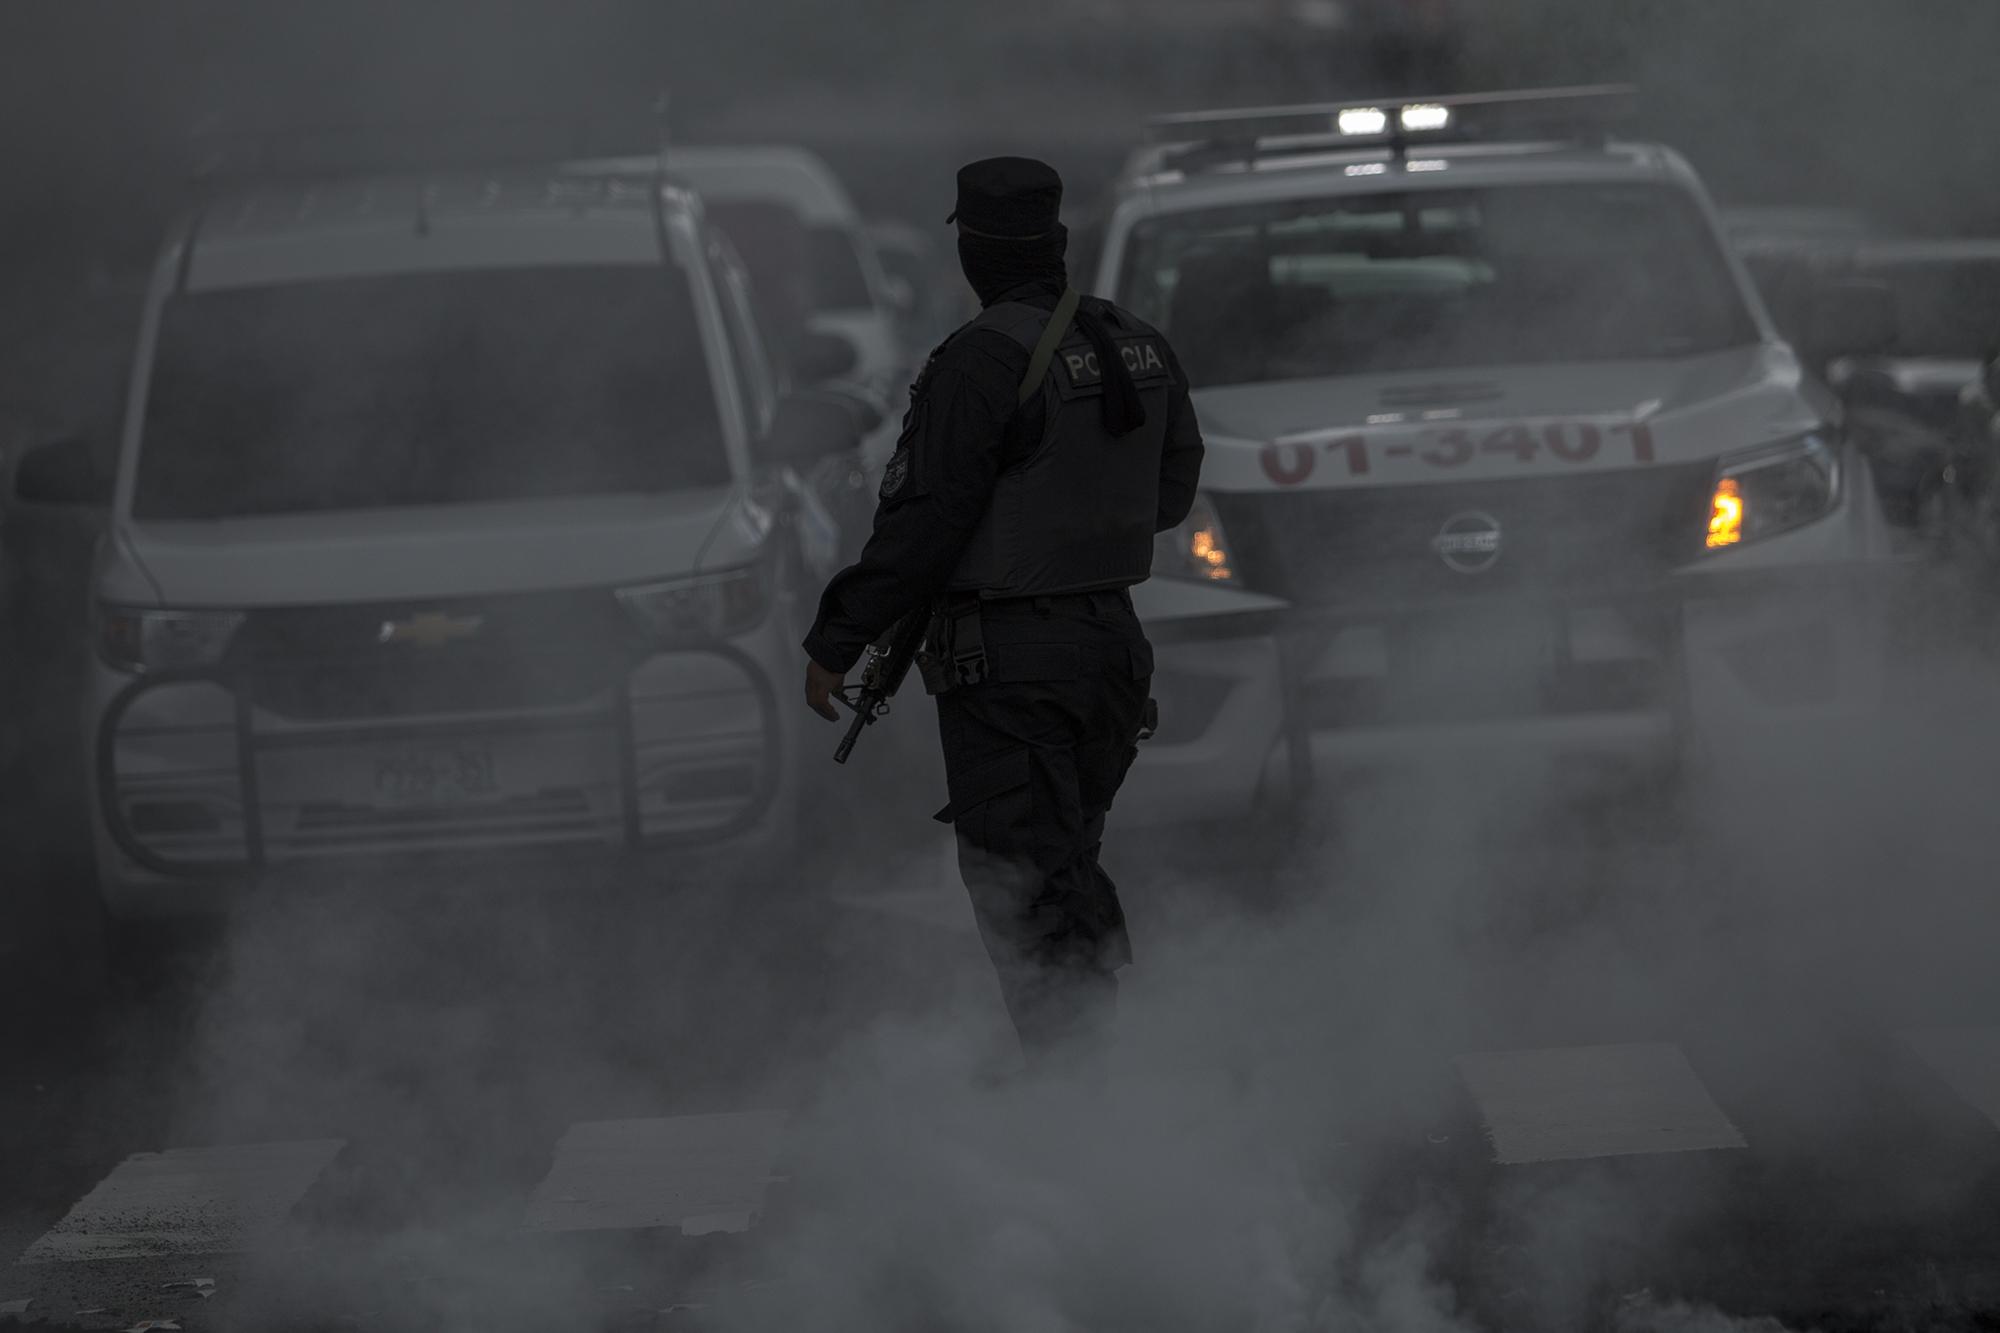 La Policía Nacional Civil custodió la marcha desde el inicio hasta el final. En la imagen, uno de los agentes quedó inmerso entre el humo y la nieve carbónica del extintor de fuego, después de que los manifestantes incendiaran llantas sobre el Bulevar Universitario.